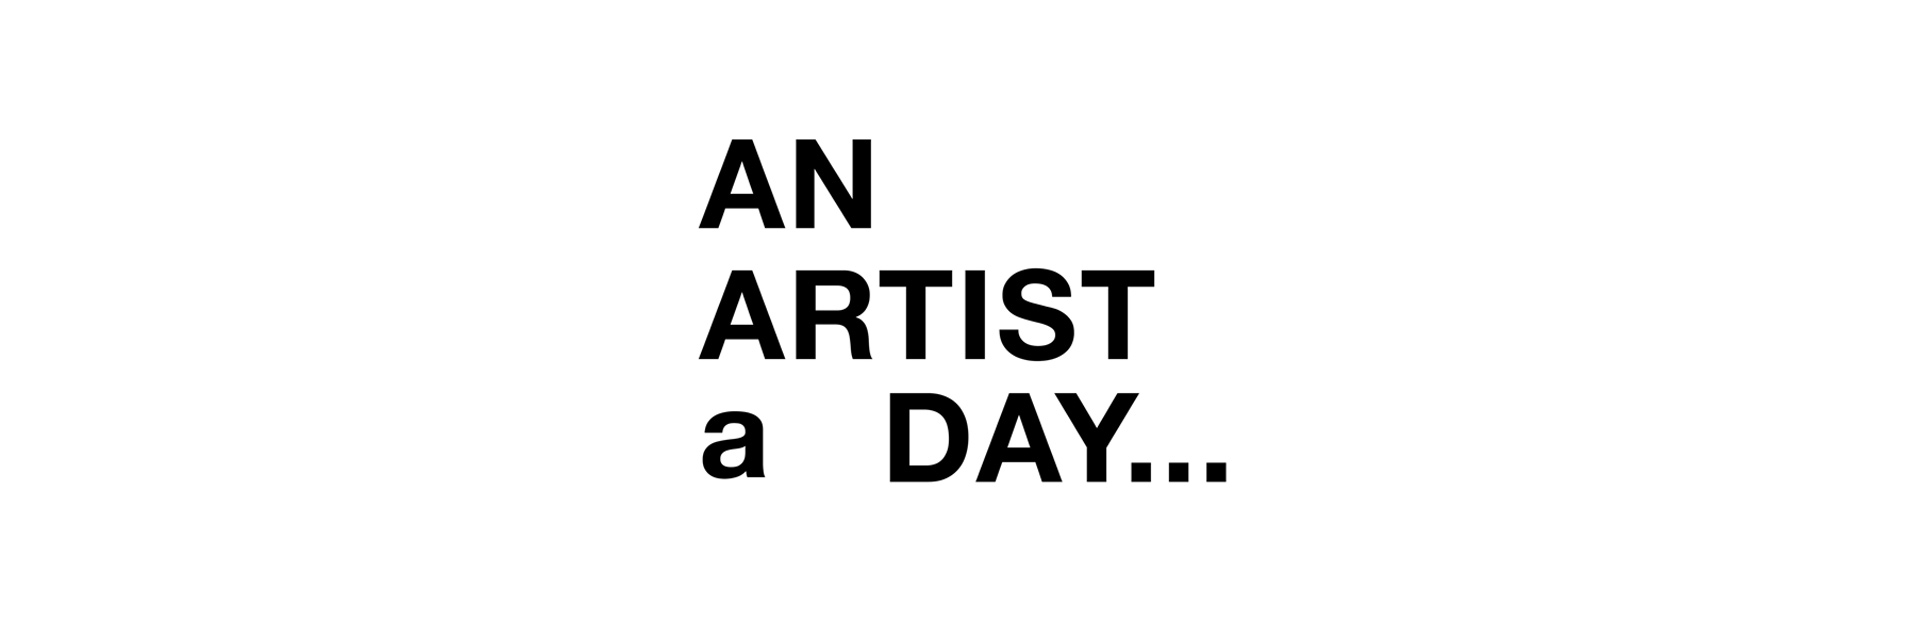 An Artist a Day... - Artist-Run Alliance